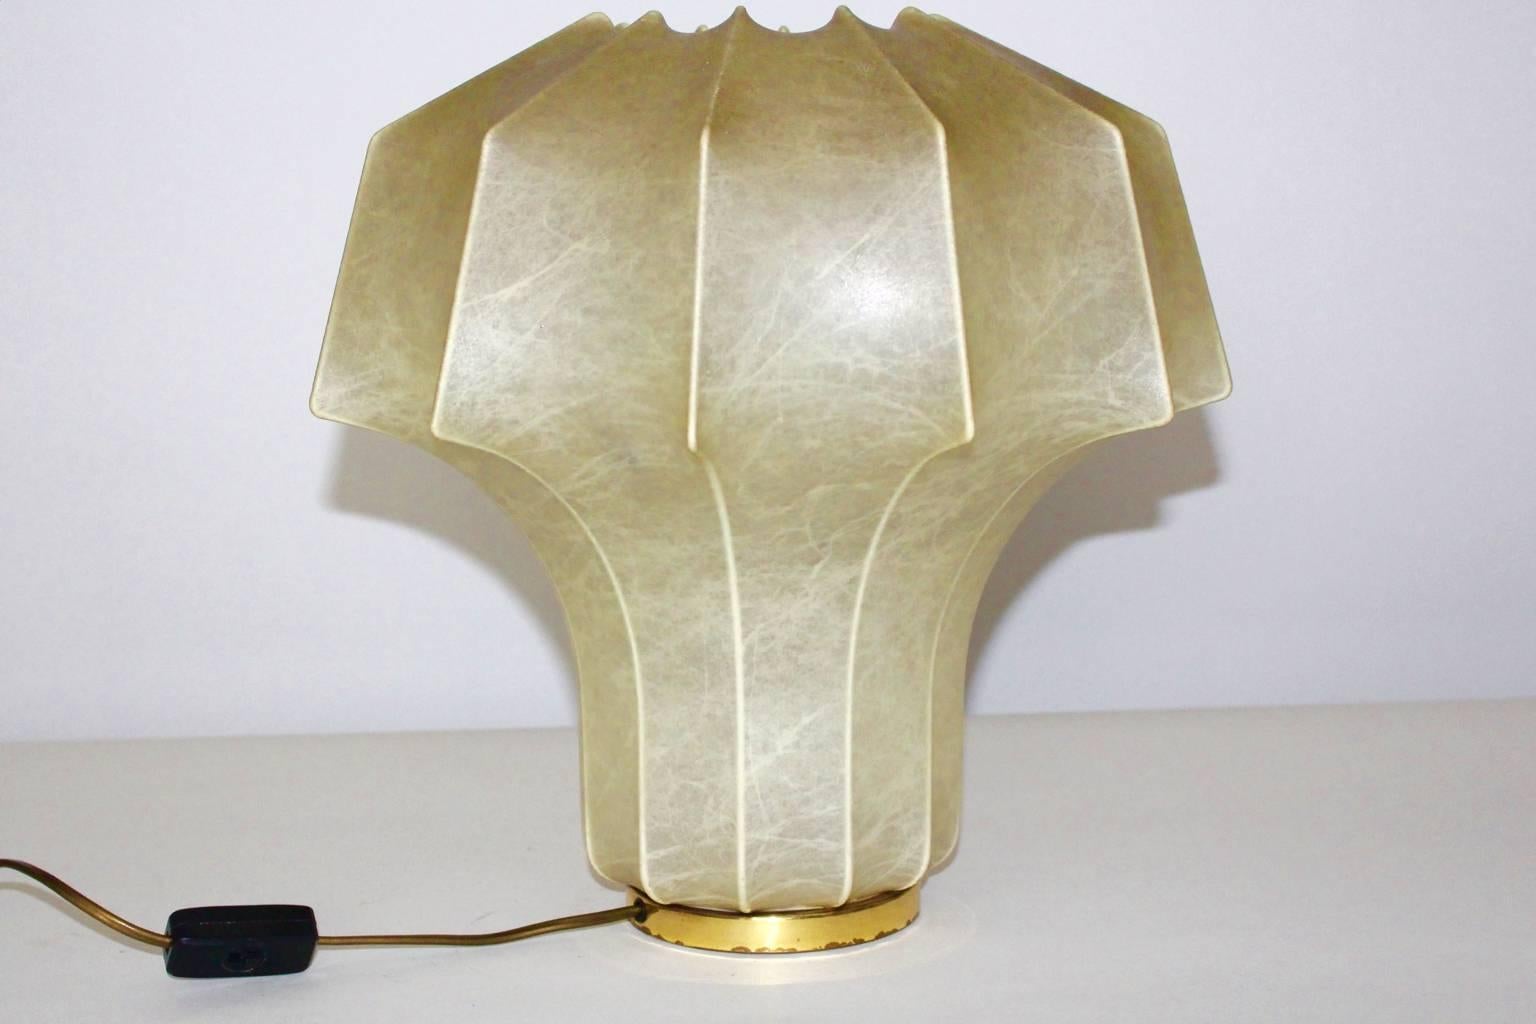 Moderne organische biomorphe Vintage-Tischlampe im Stil von Achille & Pier Giacomo Castiglioni, 1960er Jahre.
Die Vintage-Tischlampe von Linus Bopp, Limbach 1960er Jahre, Deutschland ist unten beschriftet.
Außerdem ist der Metallrahmen mit einem